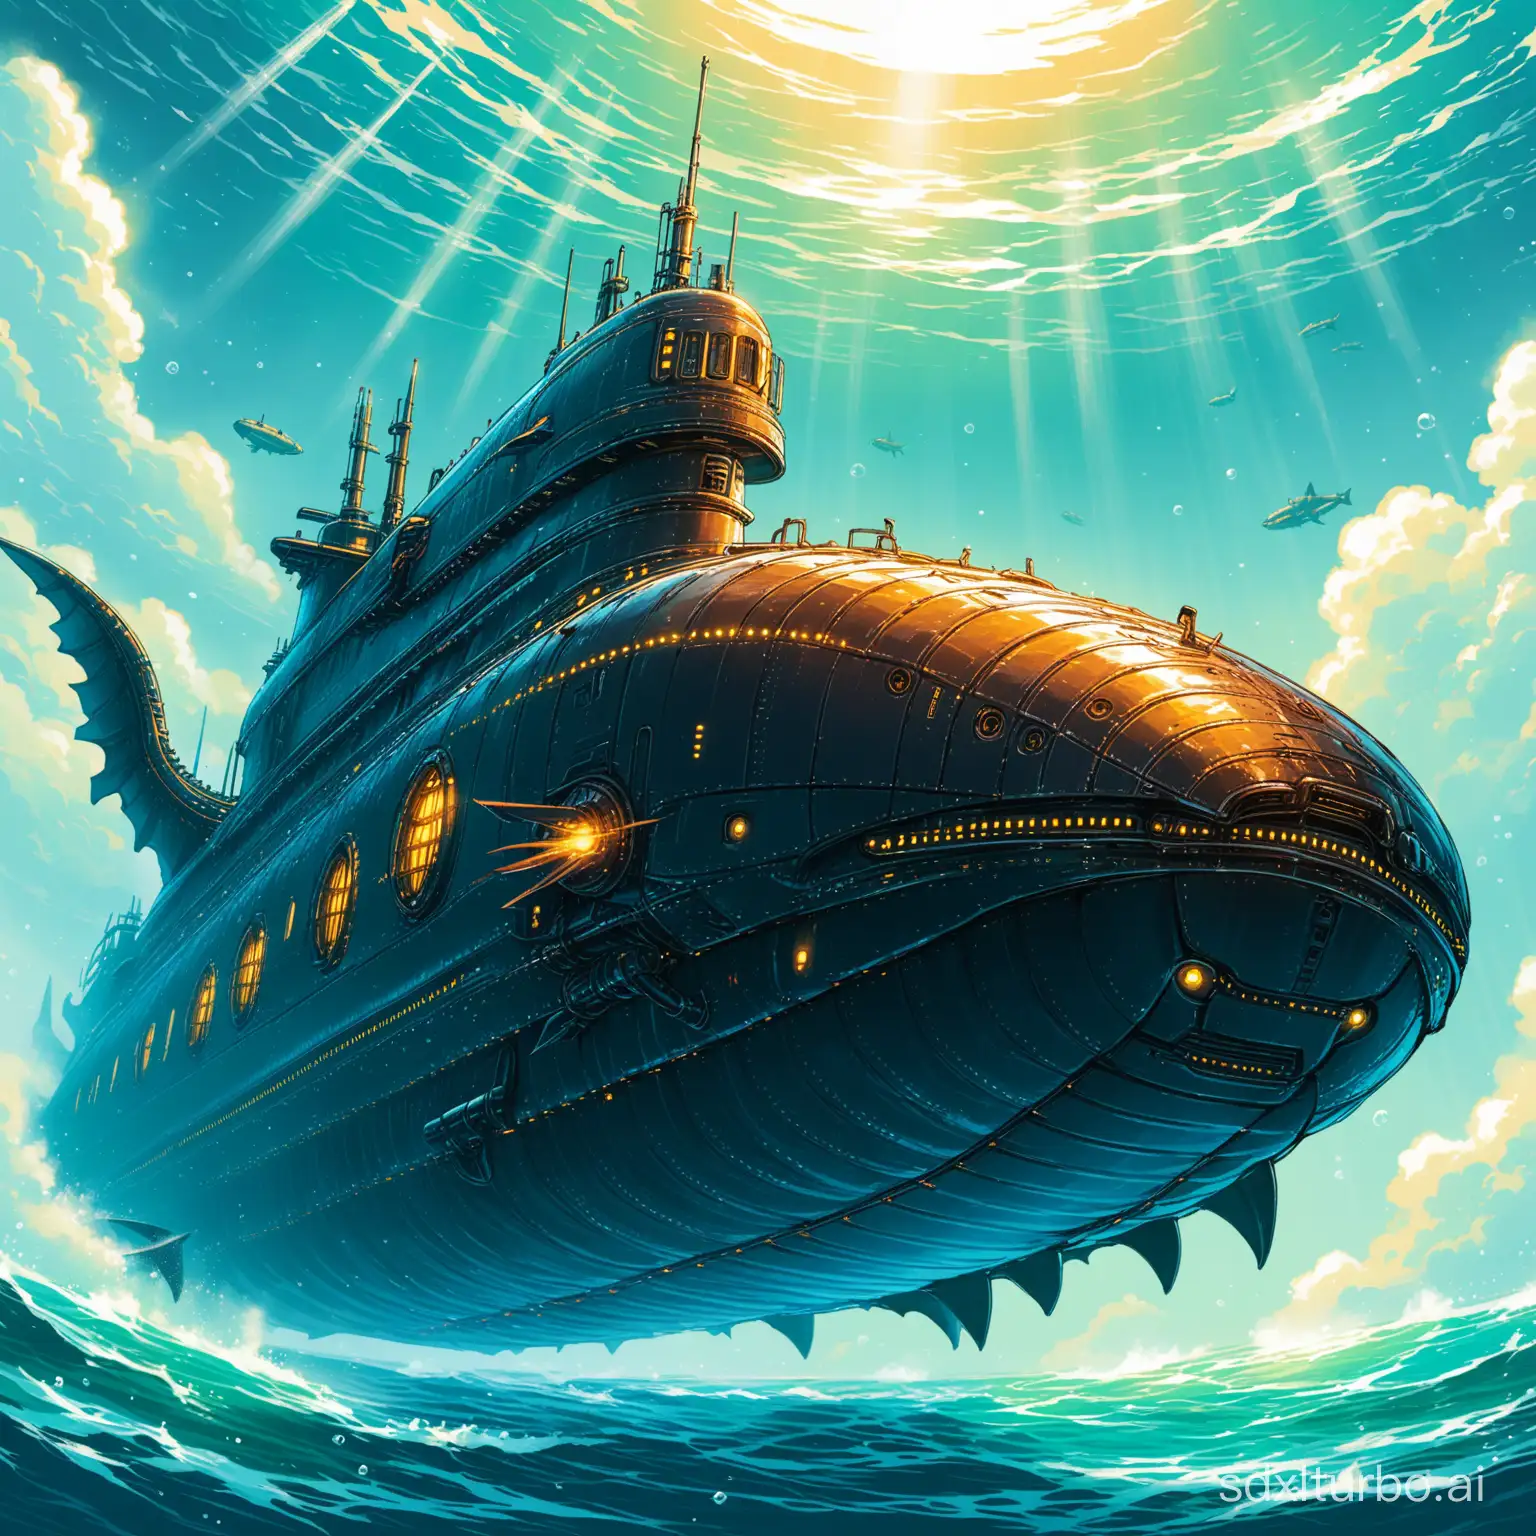 Futuristic-Dragon-Submarine-Exploring-Alien-Seas